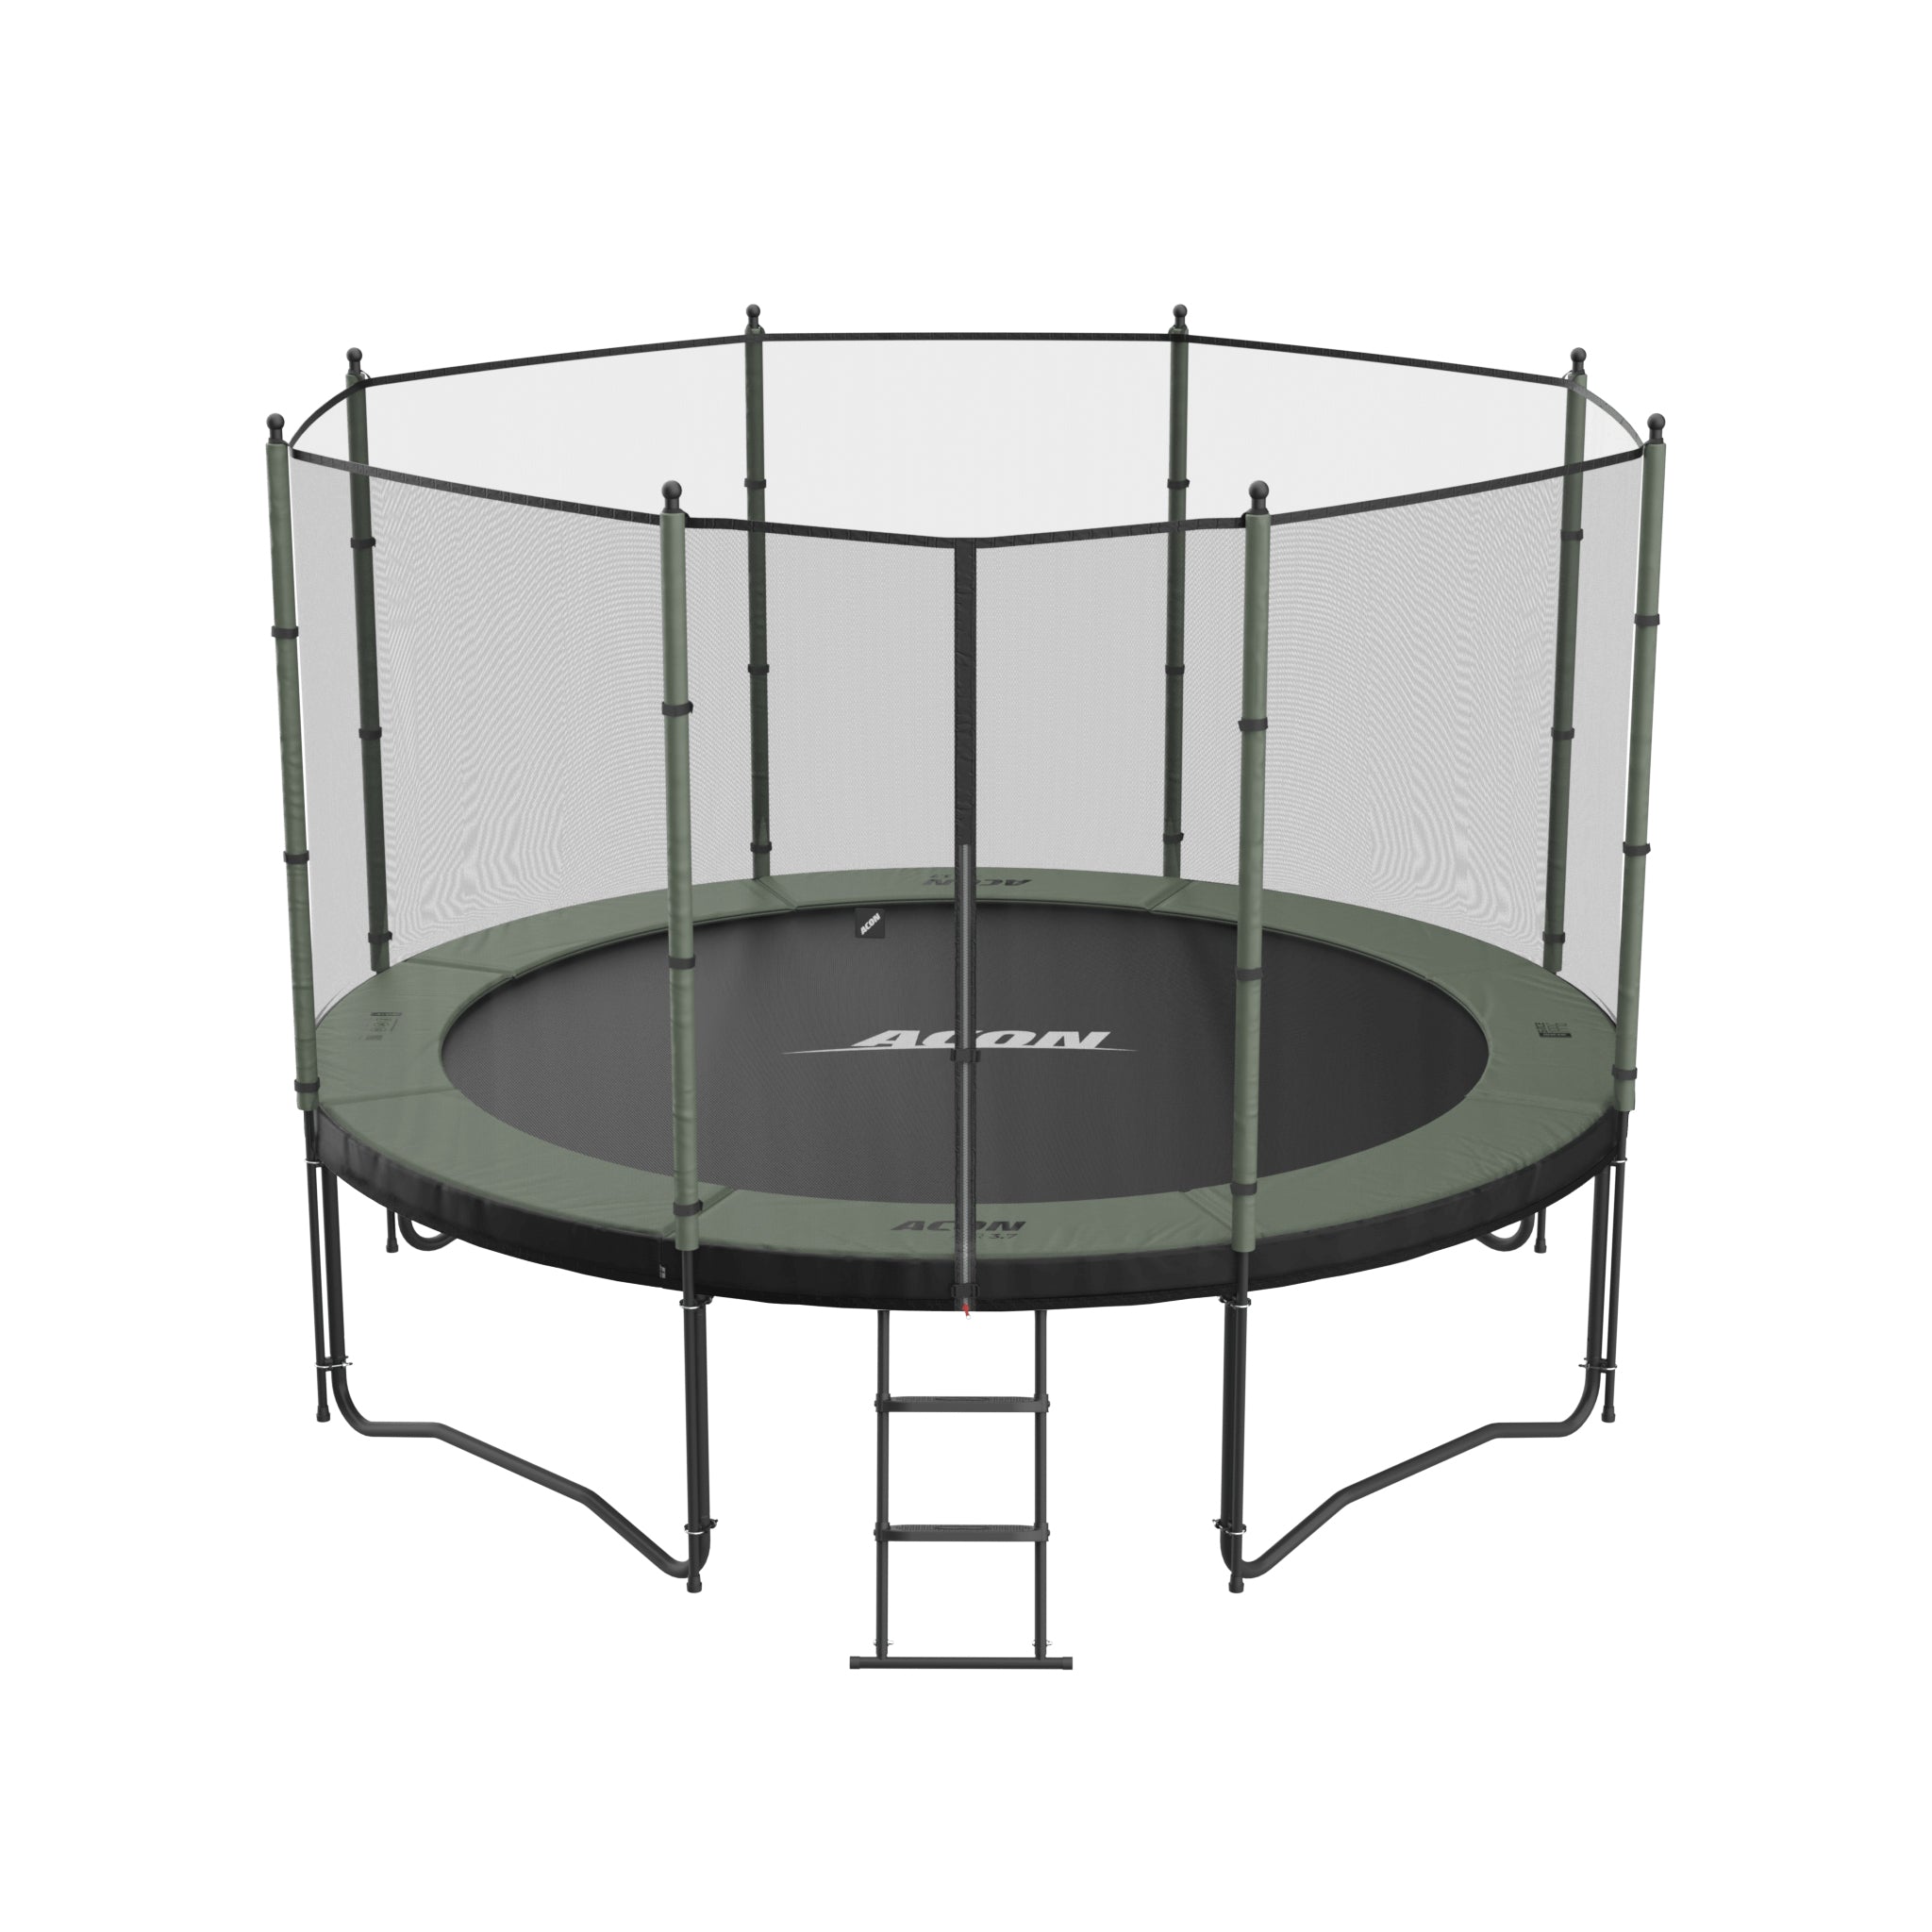 ACON Air 3,7m trampoliini, jossa on Standard-turvaverkko ja tikkaat.